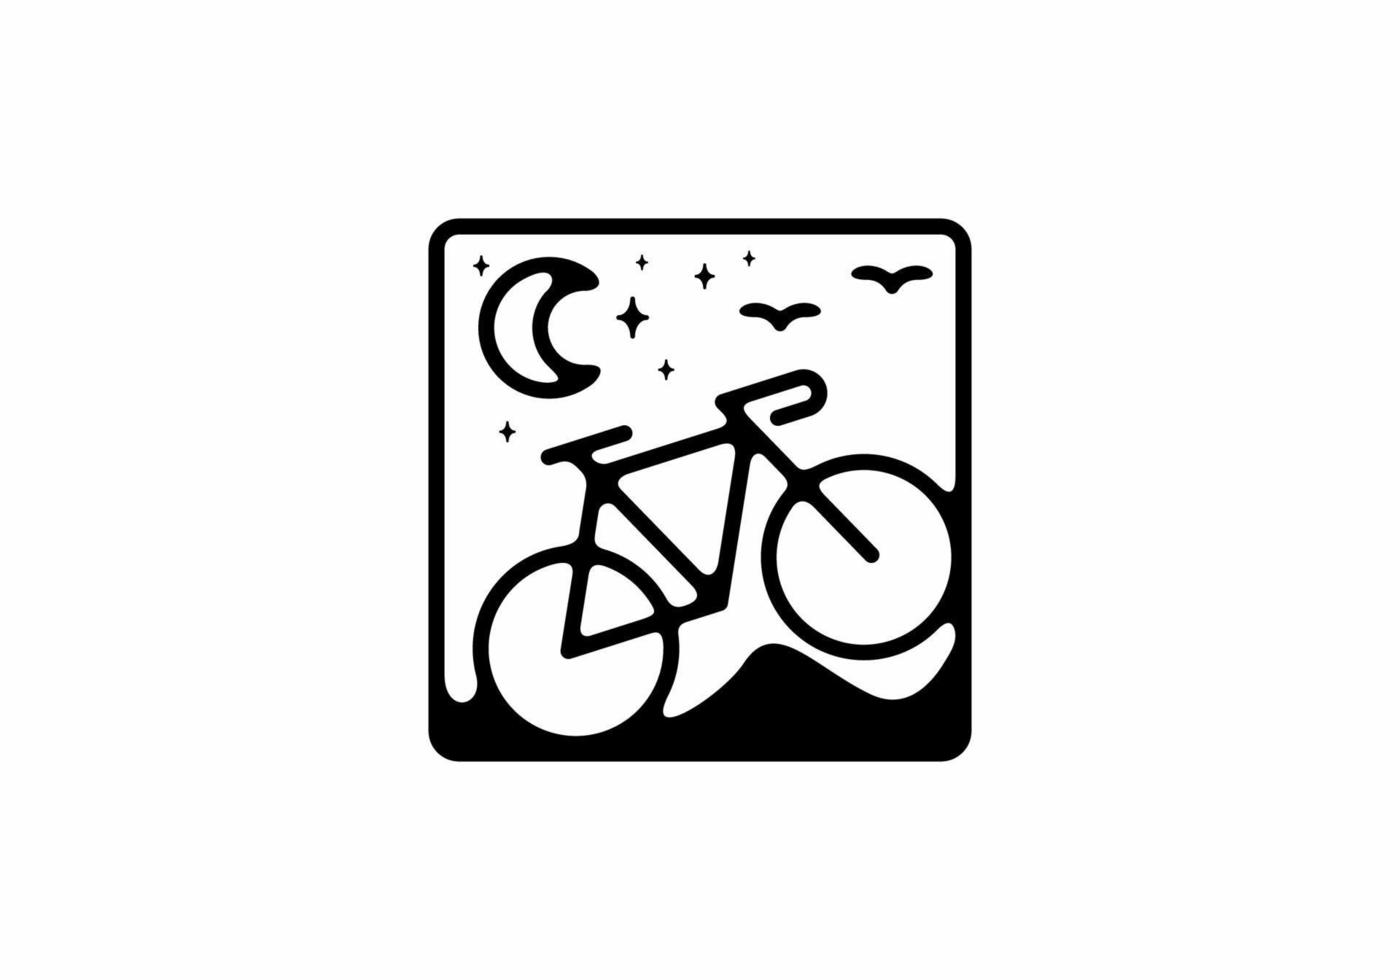 zwarte lijn kunst illustratie van fiets in vierkante vorm vector